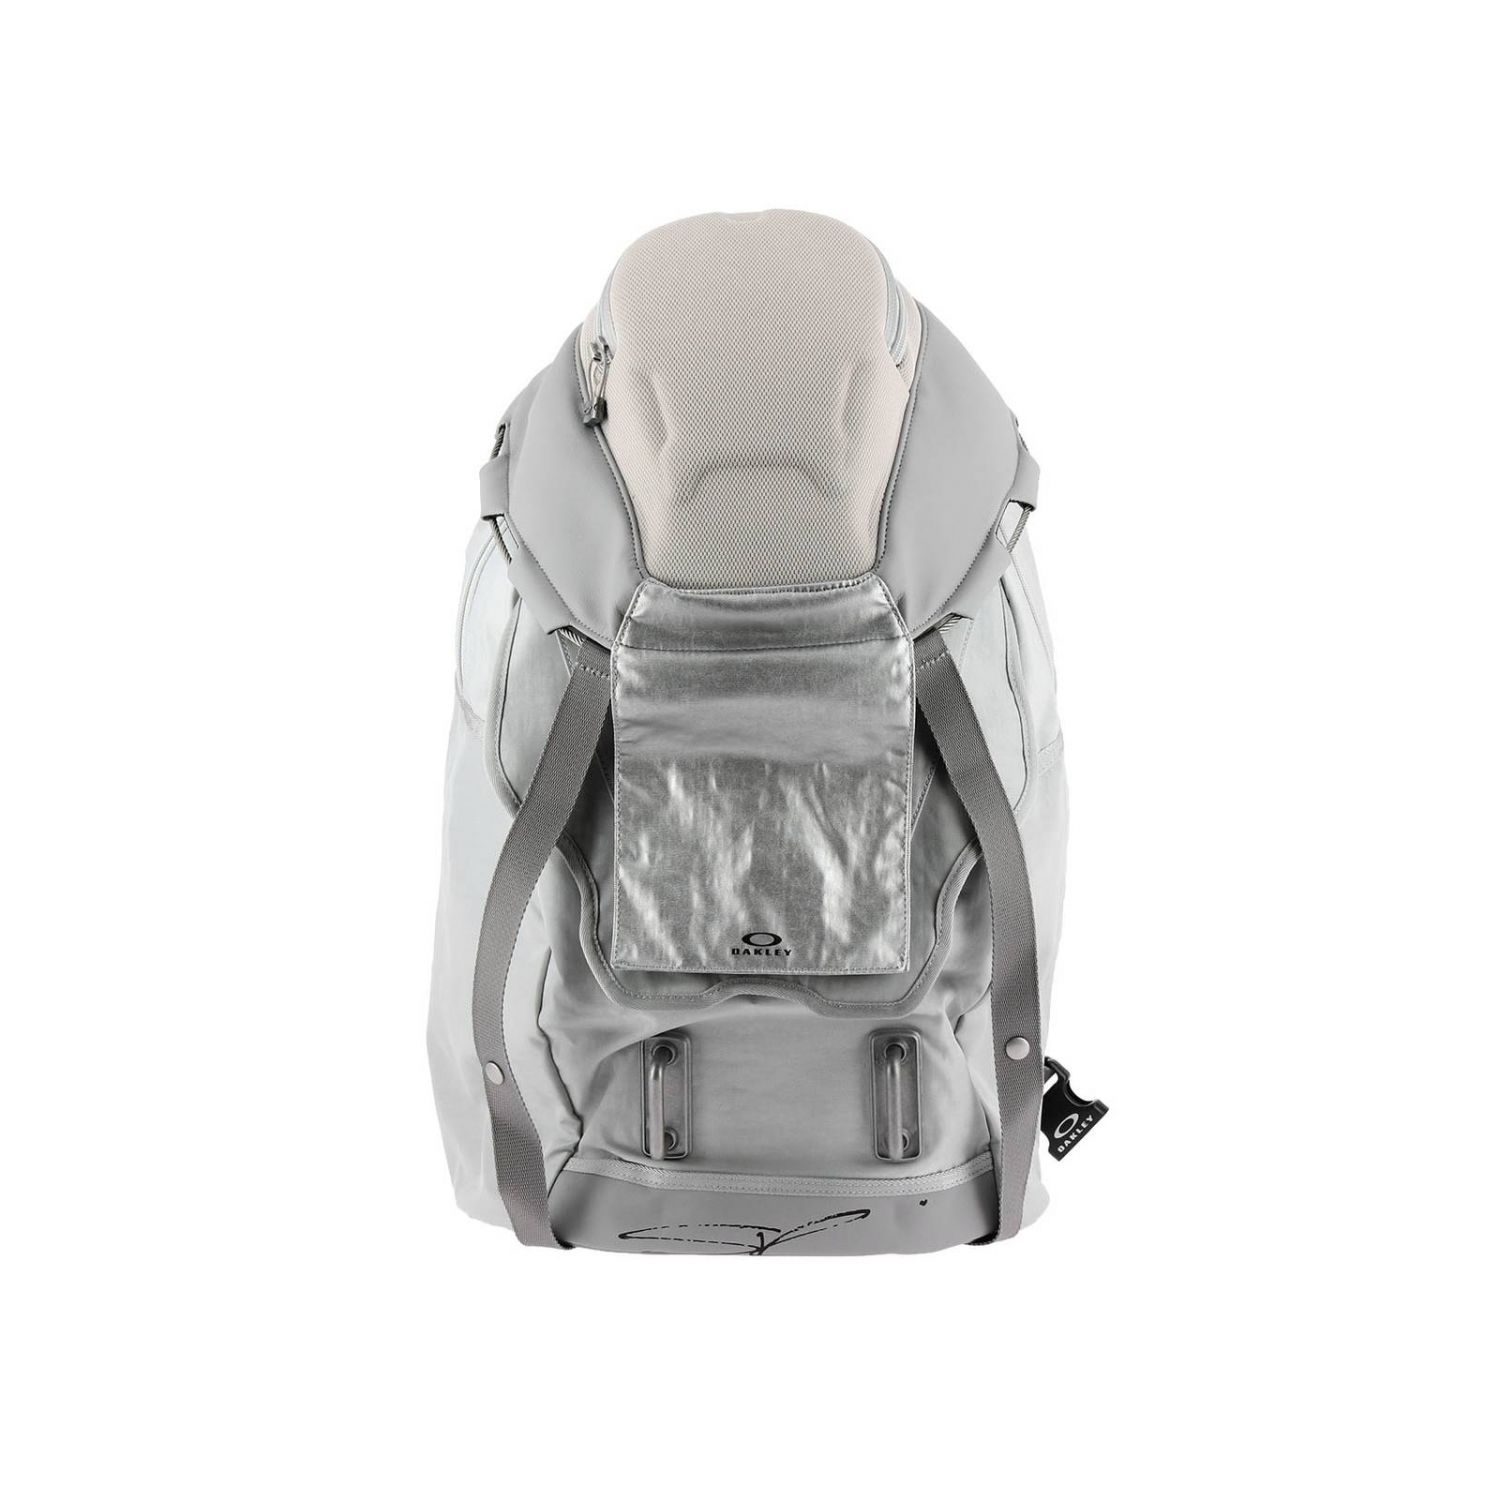 oakley grey backpack